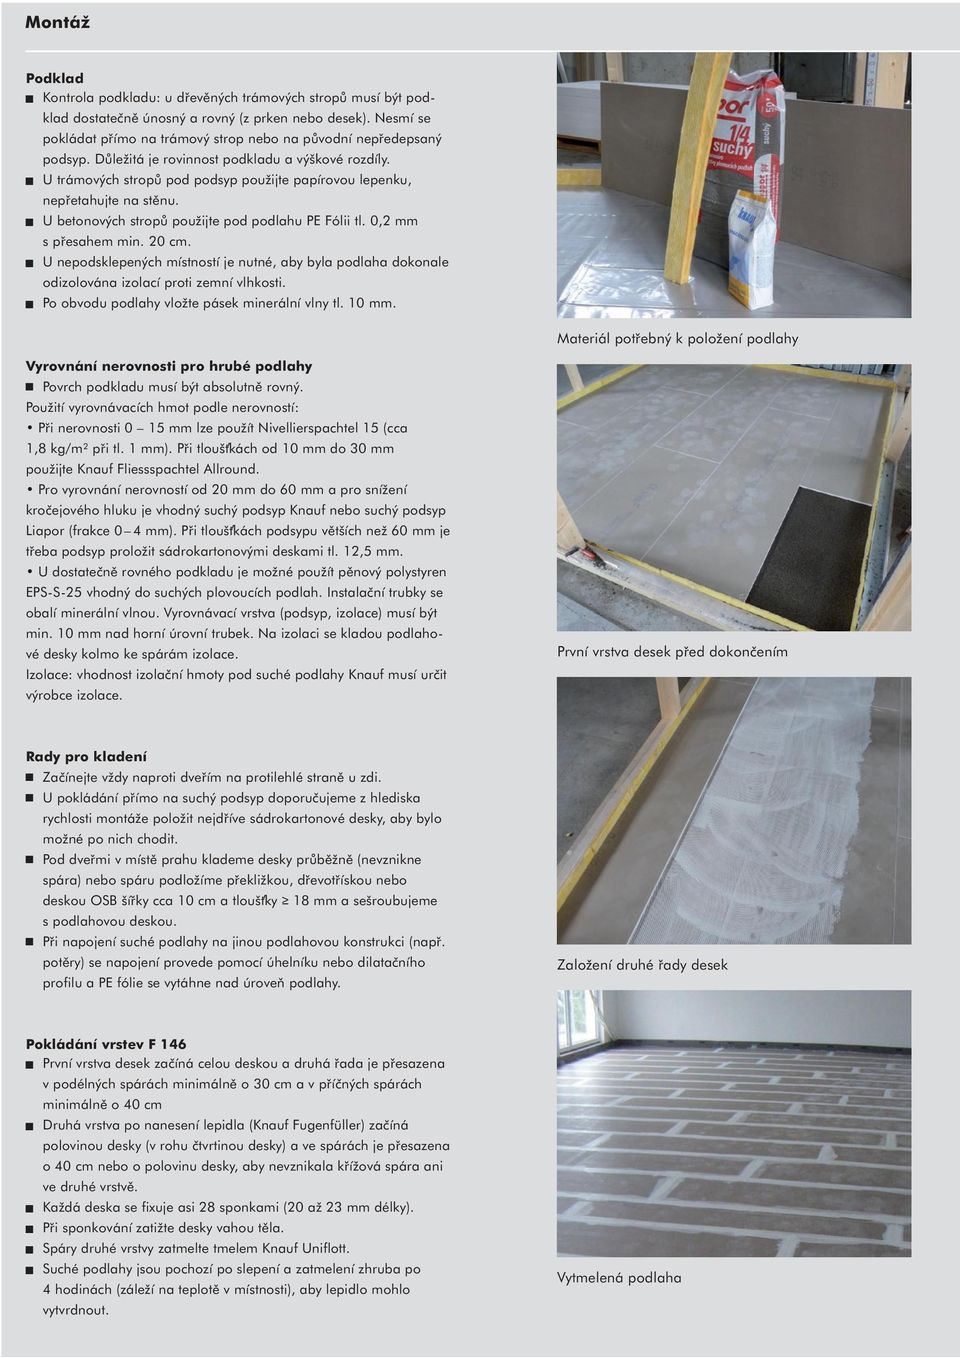 U trámových stropů pod podsyp použijte papírovou lepenku, nepřetahujte na stěnu. U betonových stropů použijte pod podlahu PE Fólii tl. 0,2 mm s přesahem min. 20 cm.